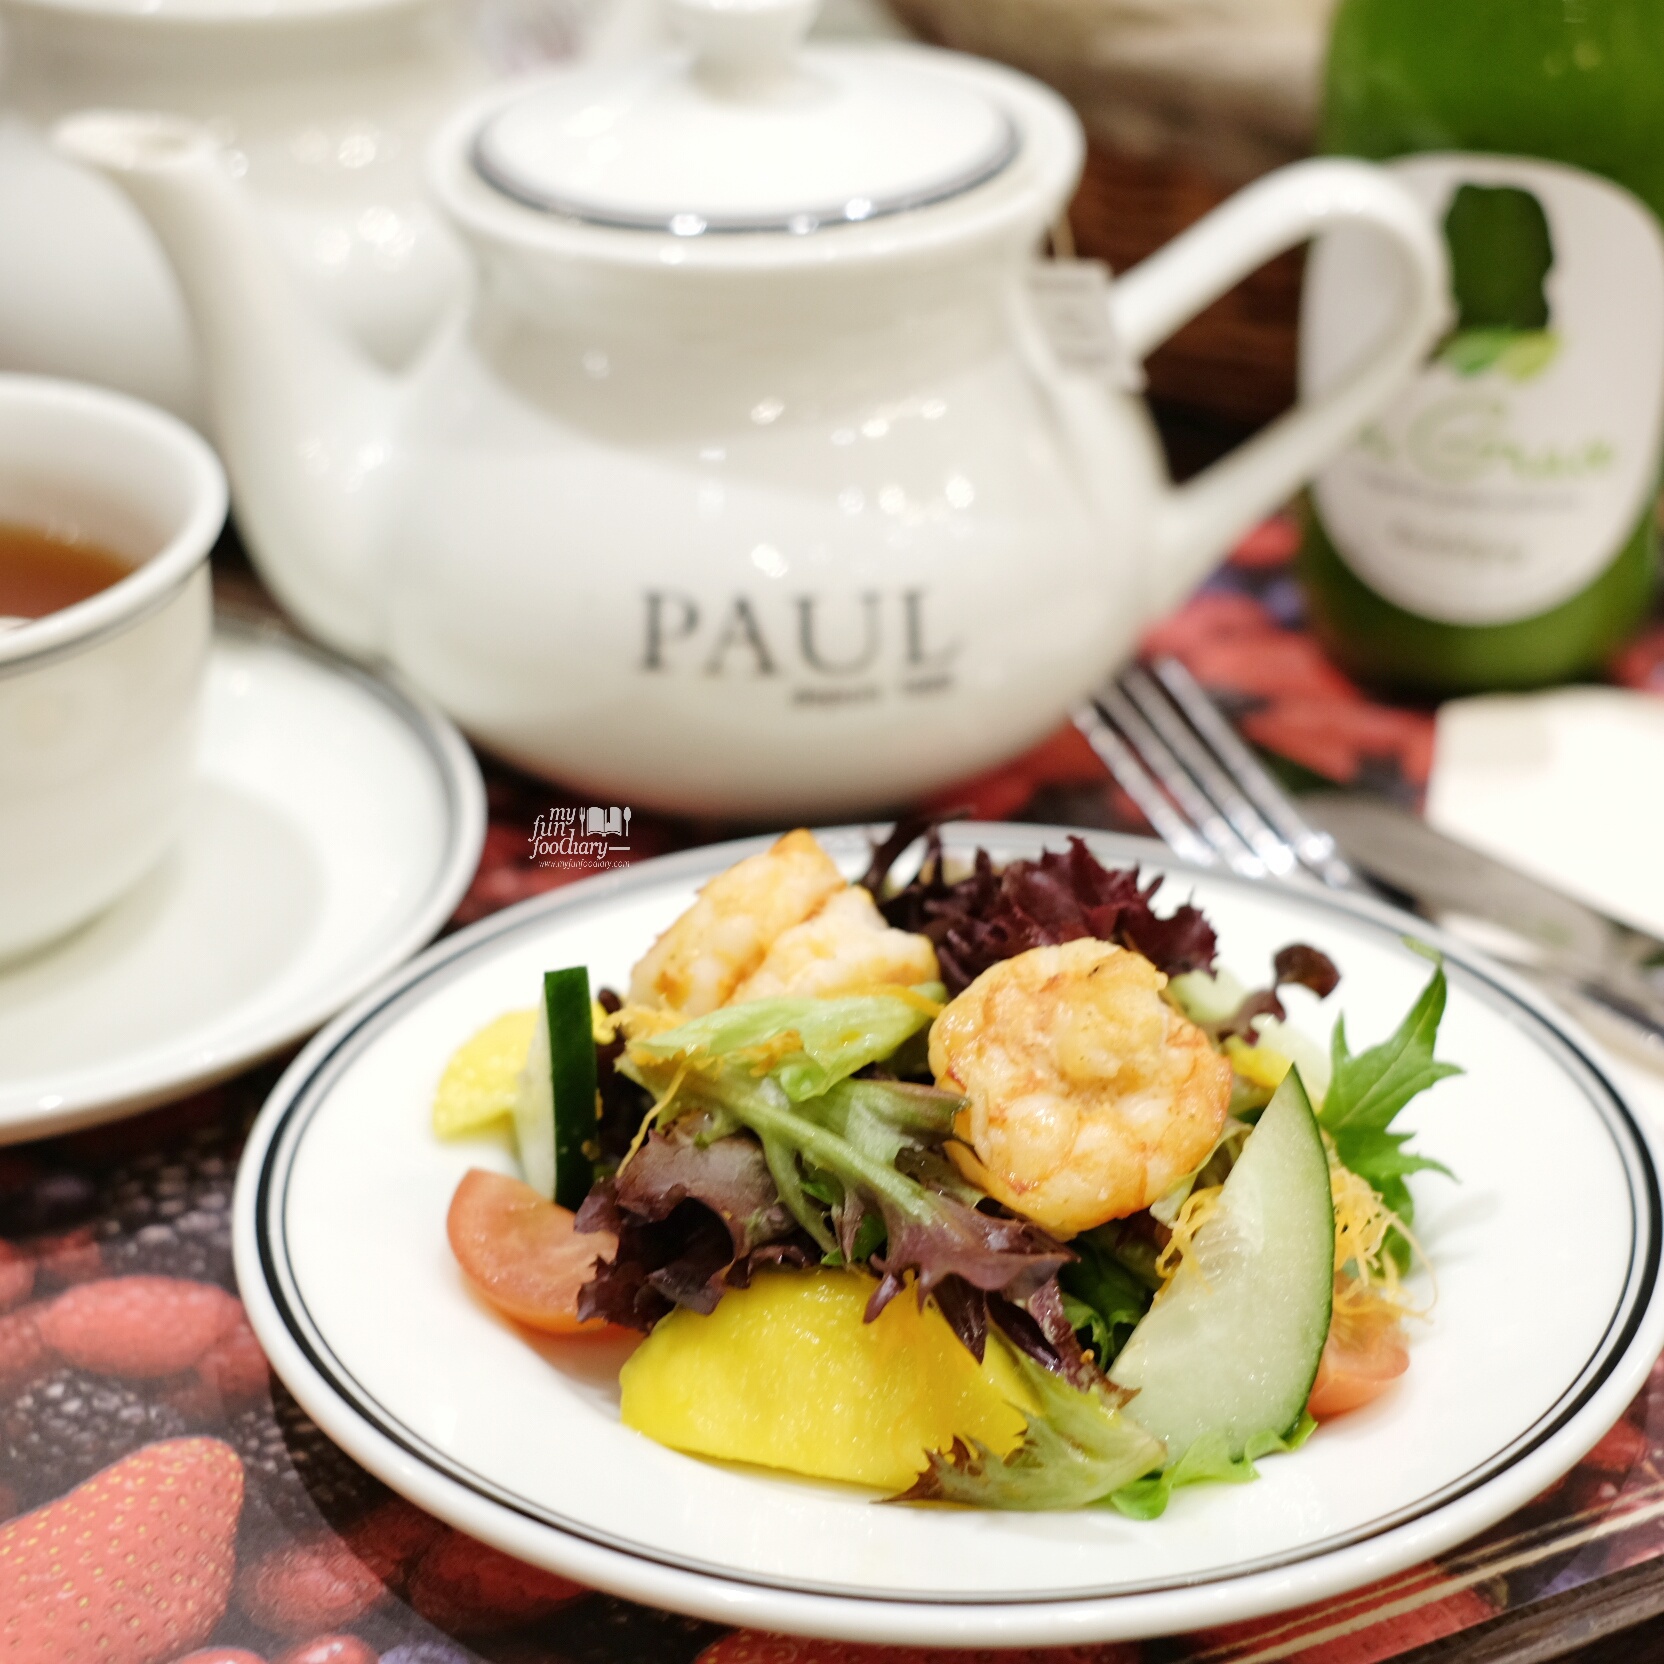 Prawn Salad at PAUL Indonesia